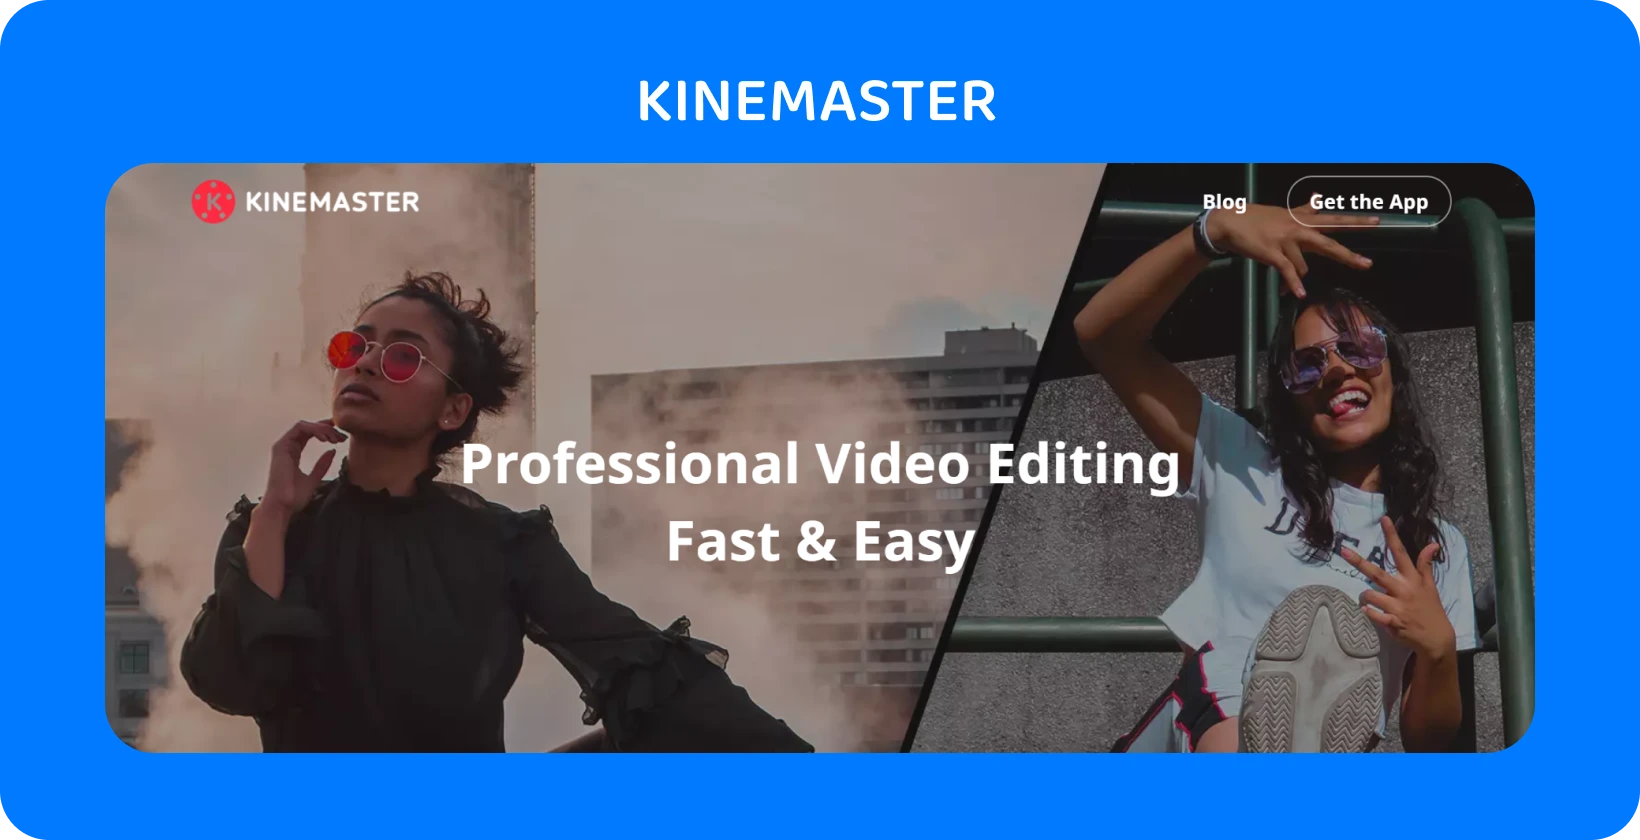 KineMaster quảng cáo ứng dụng với hai người mẫu tạo dáng, làm nổi bật chỉnh sửa video chuyên nghiệp nhanh chóng và dễ dàng.